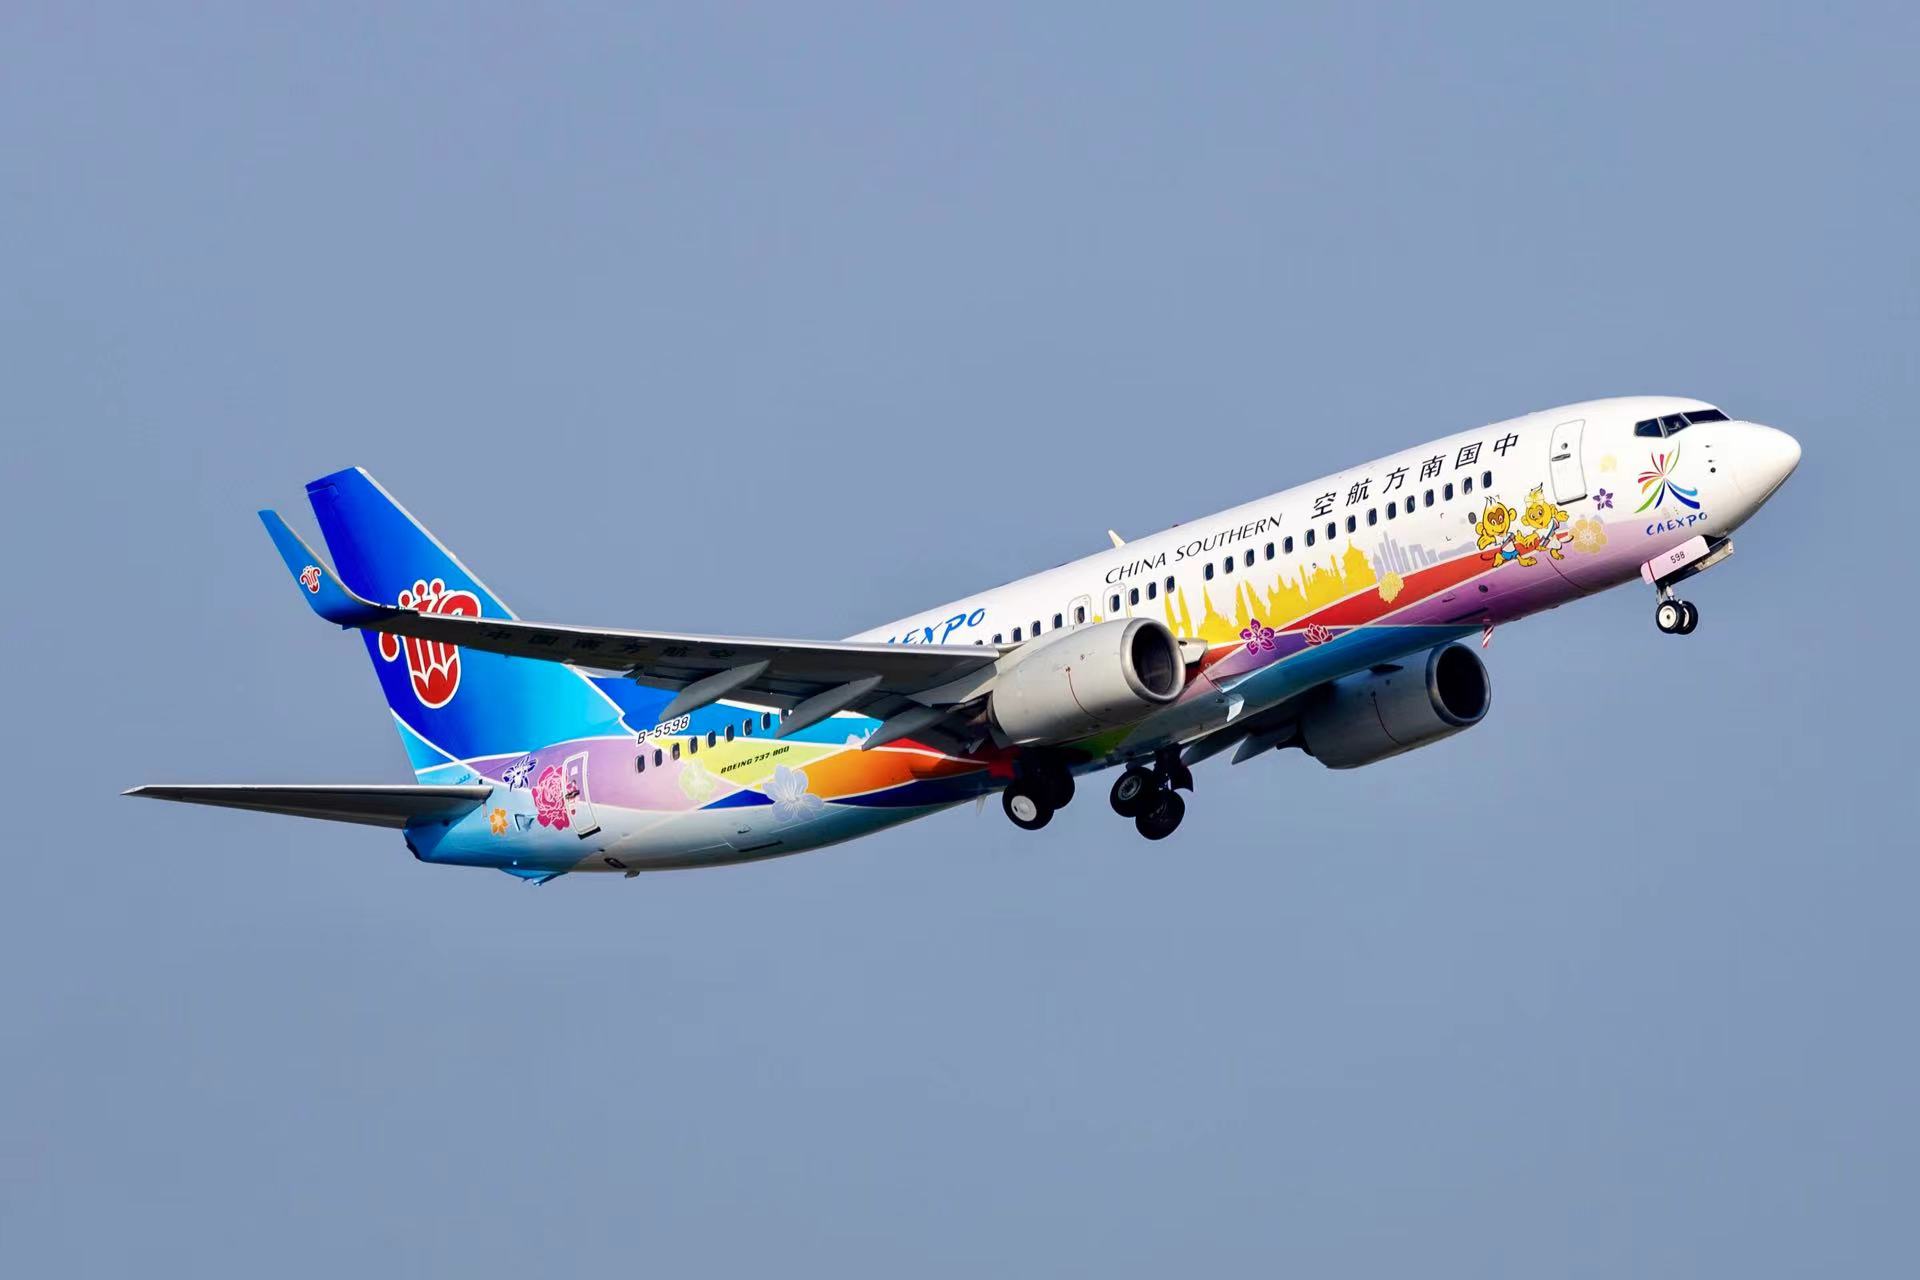 有片∣南航「中國—東盟博覽會號」彩繪飛機執飛南寧至曼谷航線